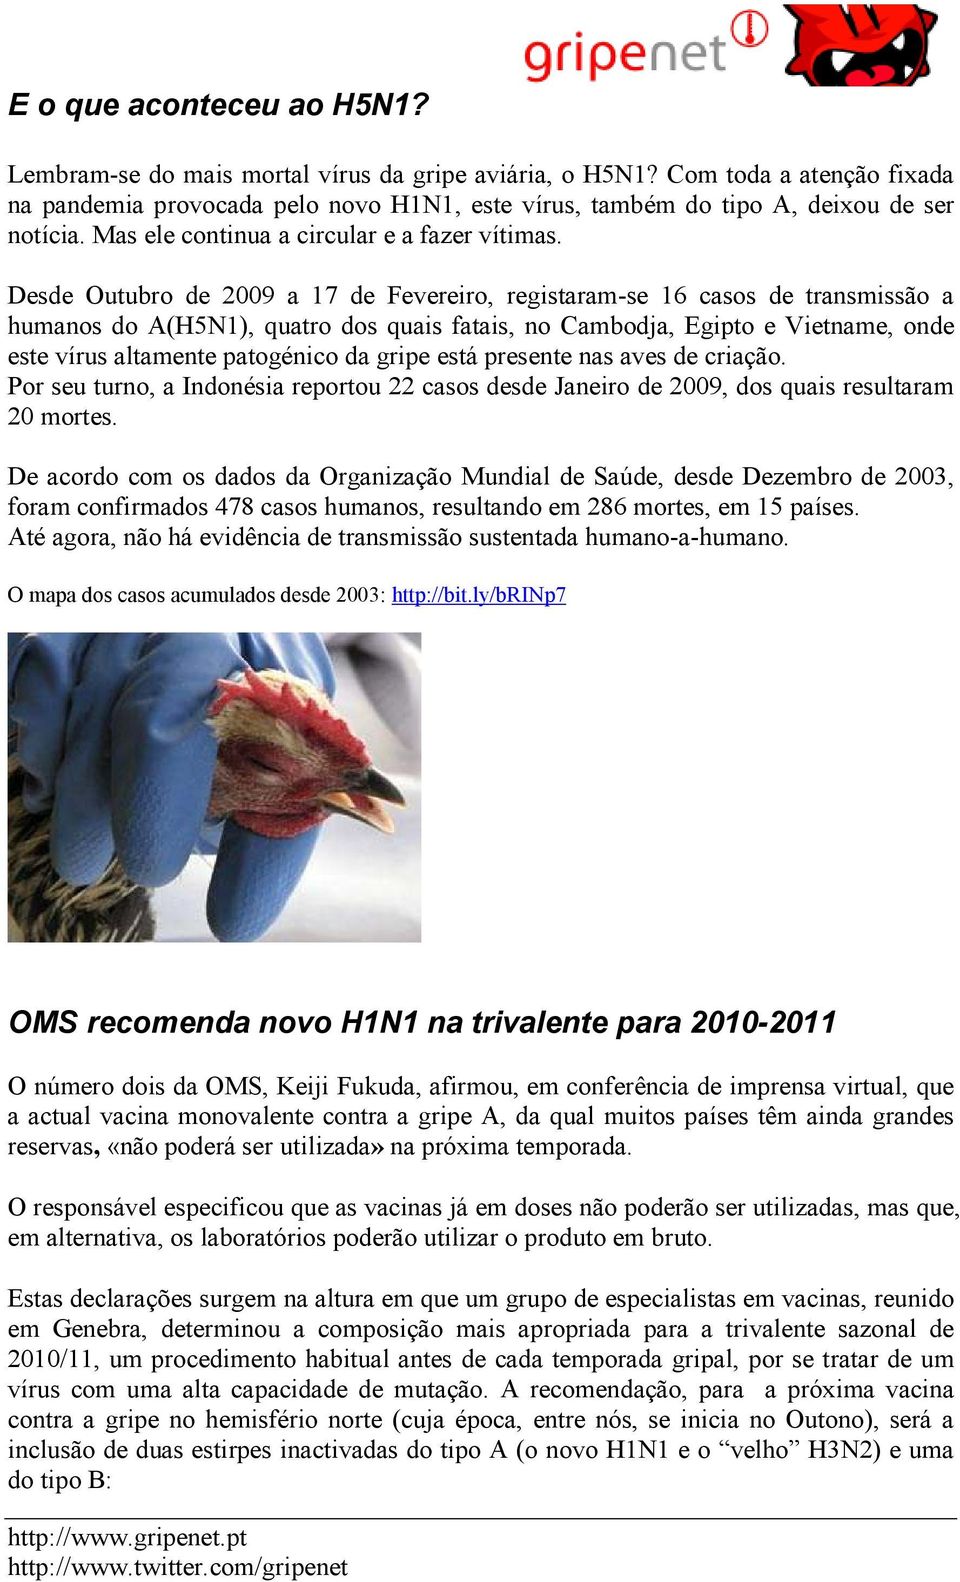 Desde Outubro de 2009 a 17 de Fevereiro, registaram-se 16 casos de transmissão a humanos do A(H5N1), quatro dos quais fatais, no Cambodja, Egipto e Vietname, onde este vírus altamente patogénico da